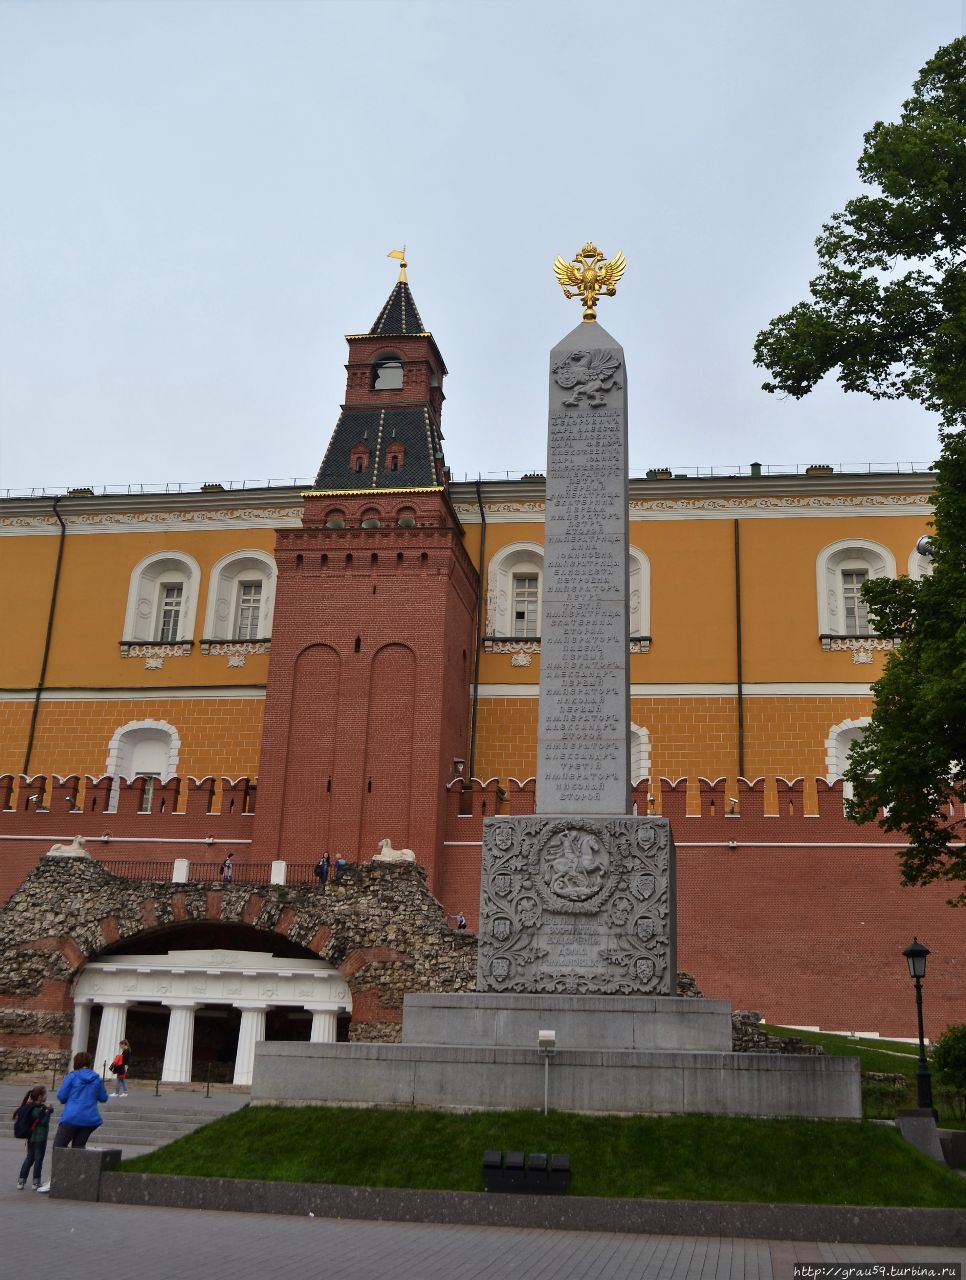 Памятник-обелиск в Александровском саду / Monument obelisk in the Alexander garden